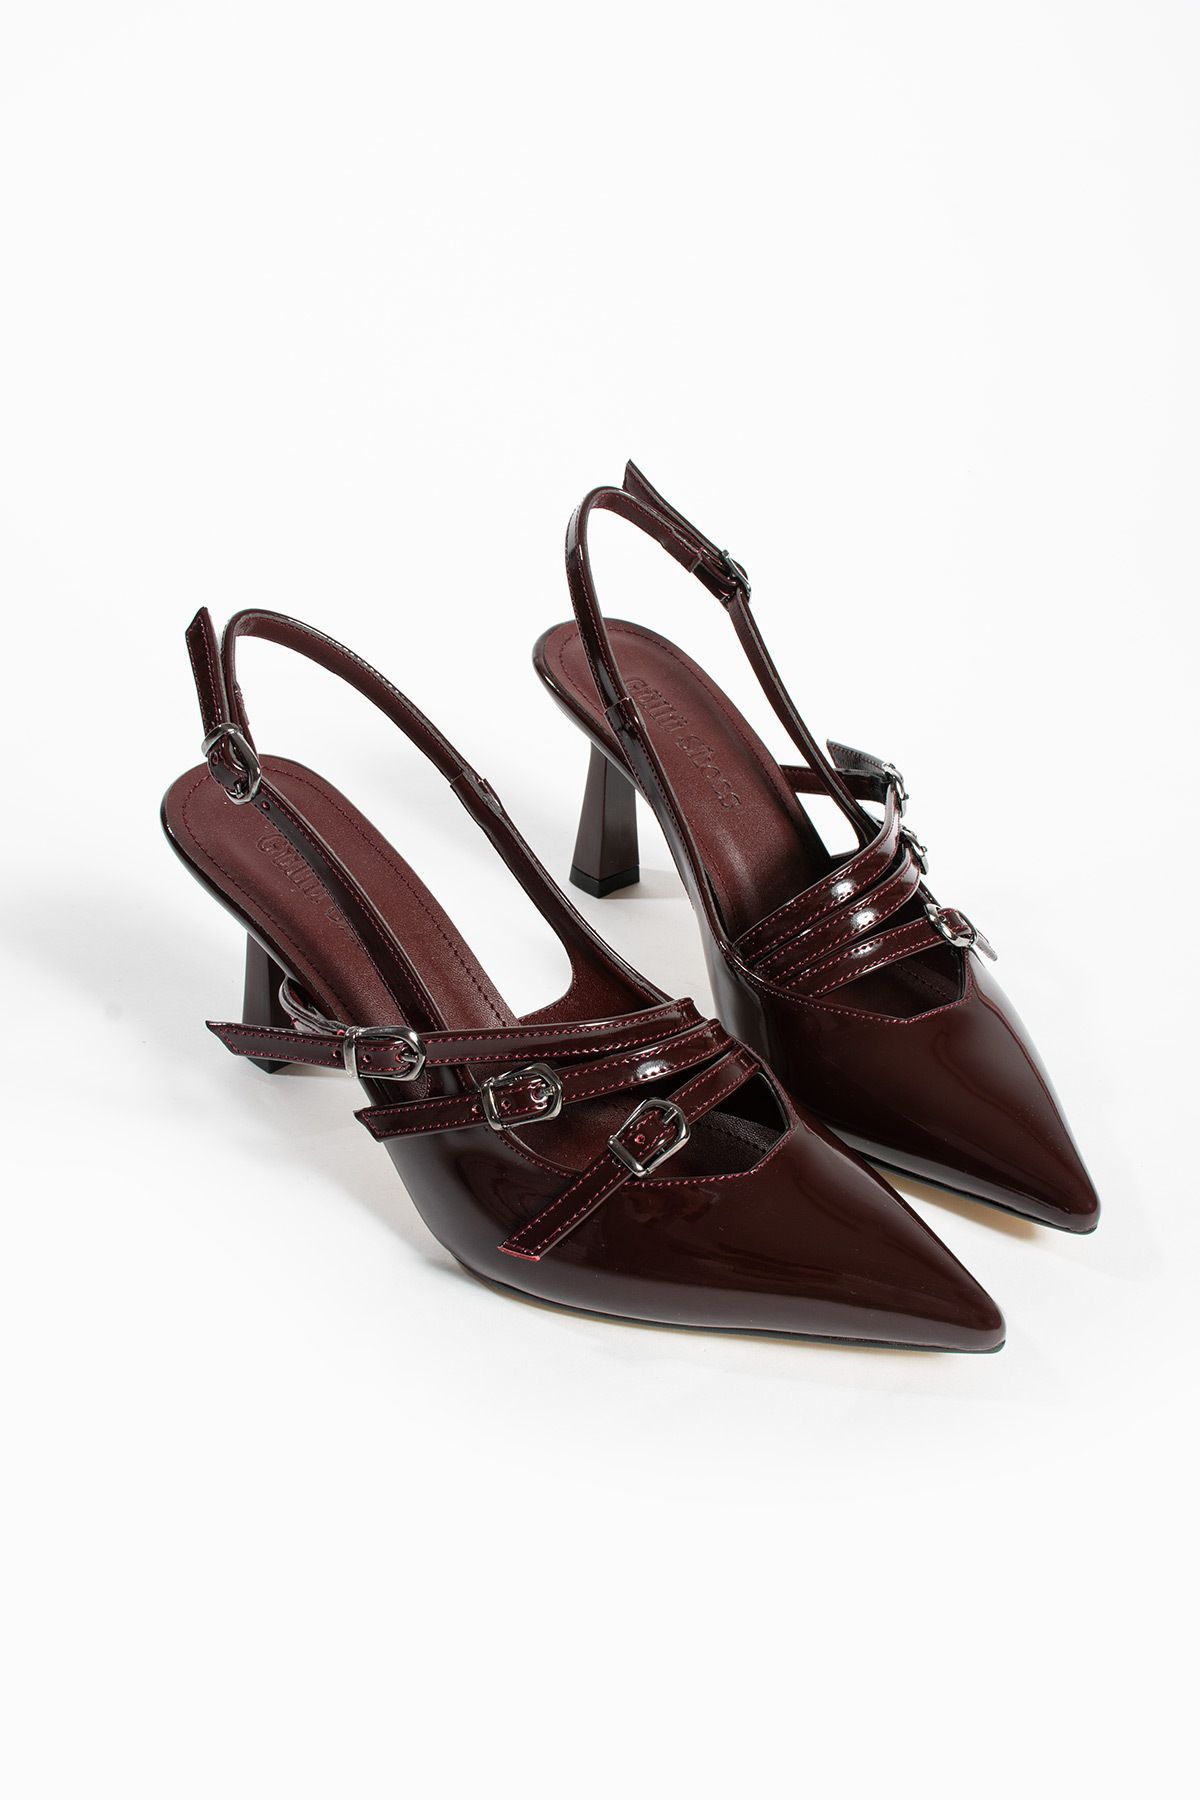 Güllü Shoes Kadın Topuklu Ayakkabı - 3 Bantlı Toka Detaylı Stiletto Rahat Şık ve Modern - 8cm